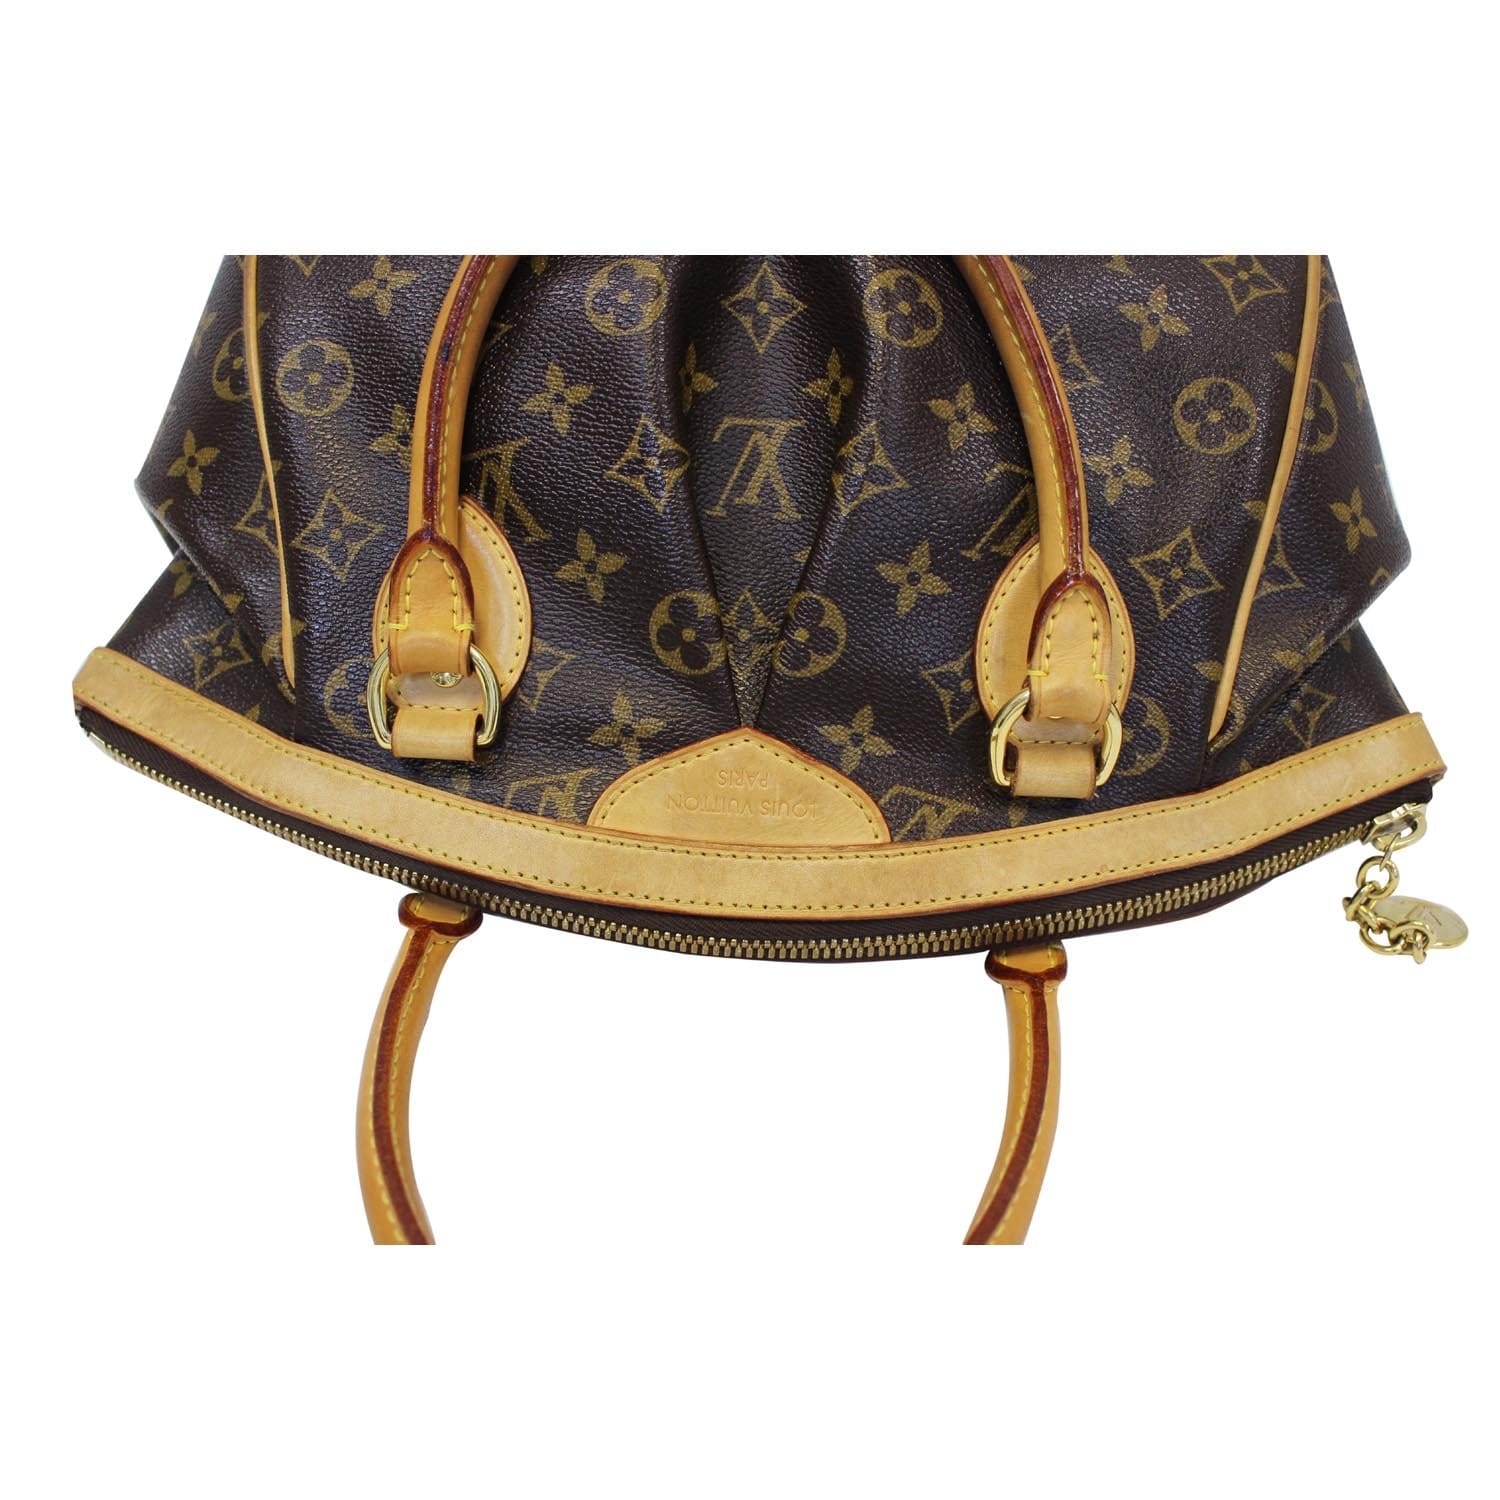 Louis Vuitton Tivoli PM Monogram Handbag #sheerroom #vintage